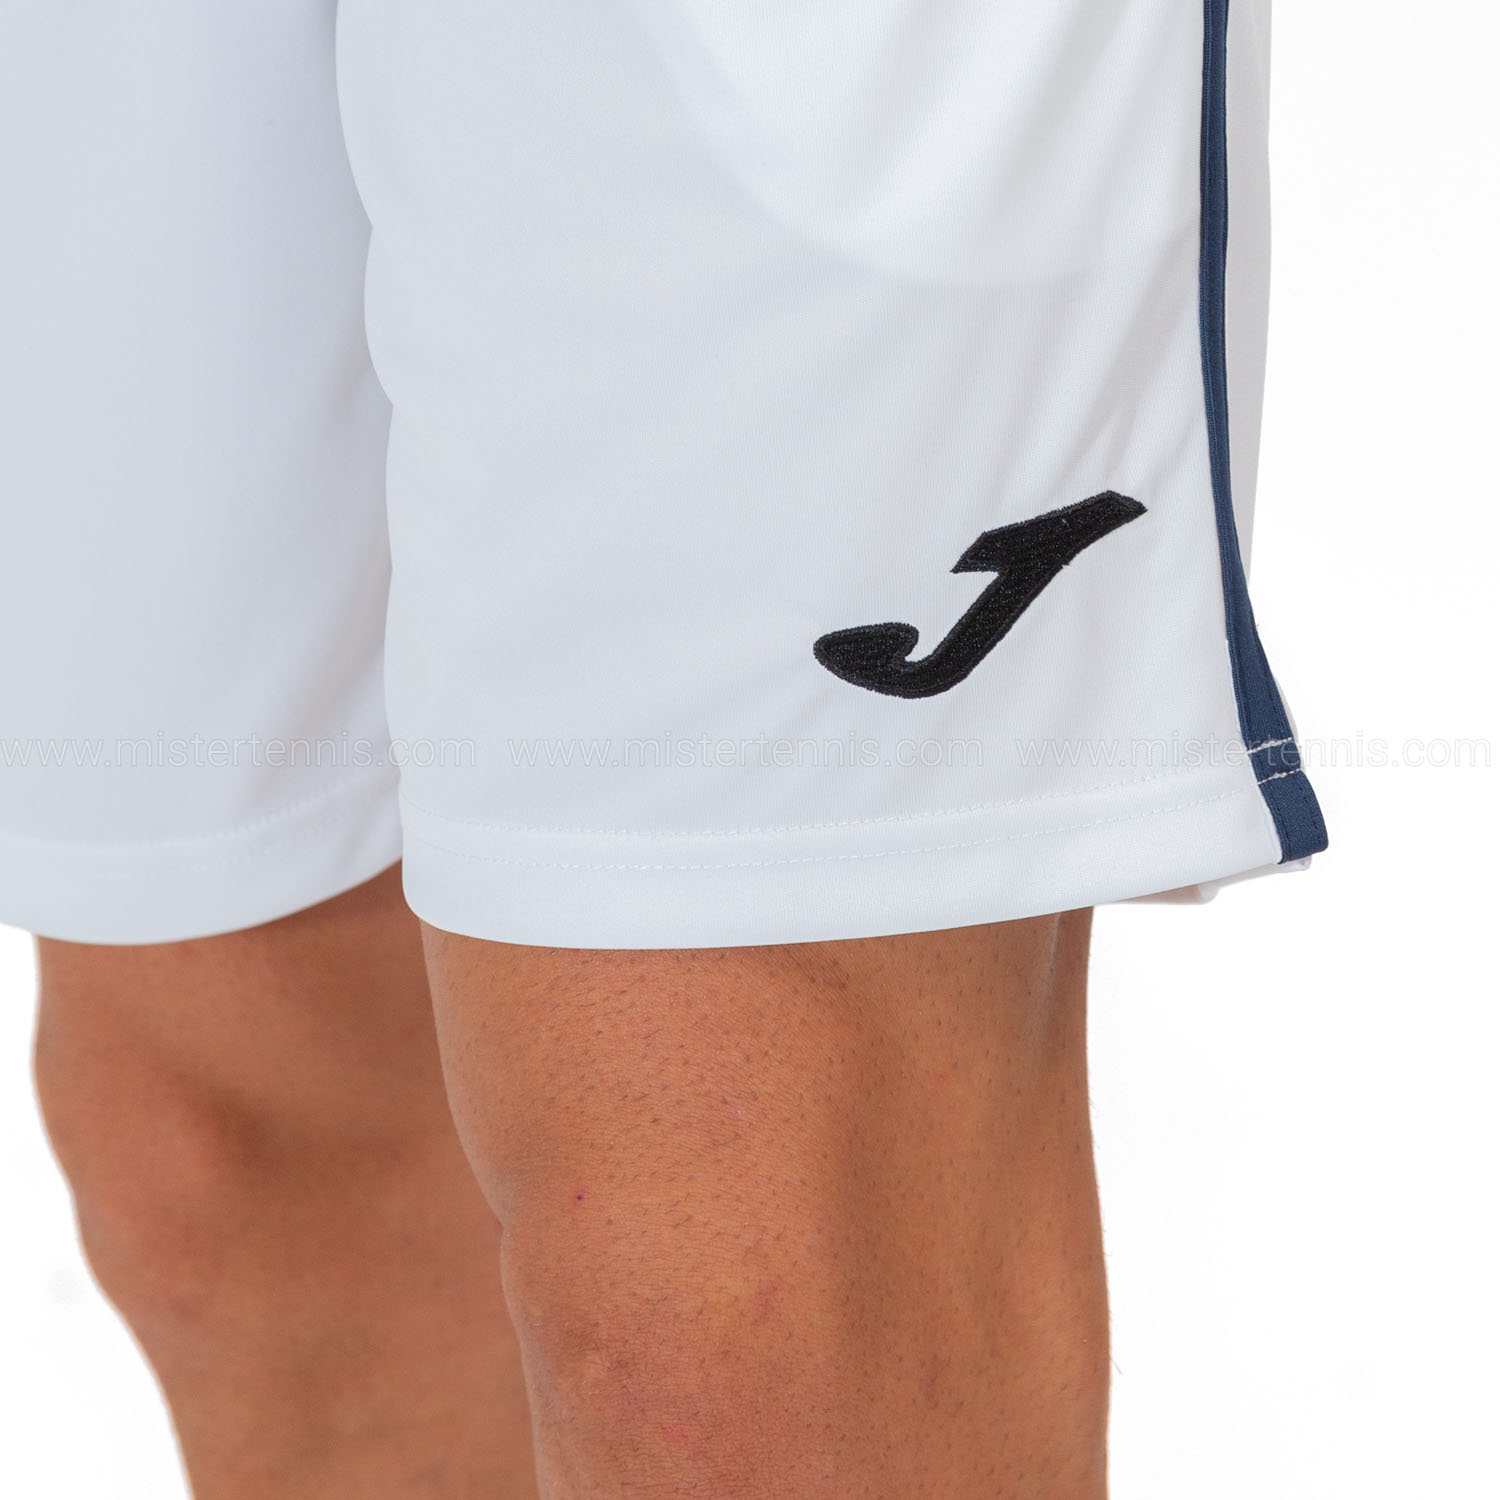 Joma Open III 7in Shorts - White/Navy